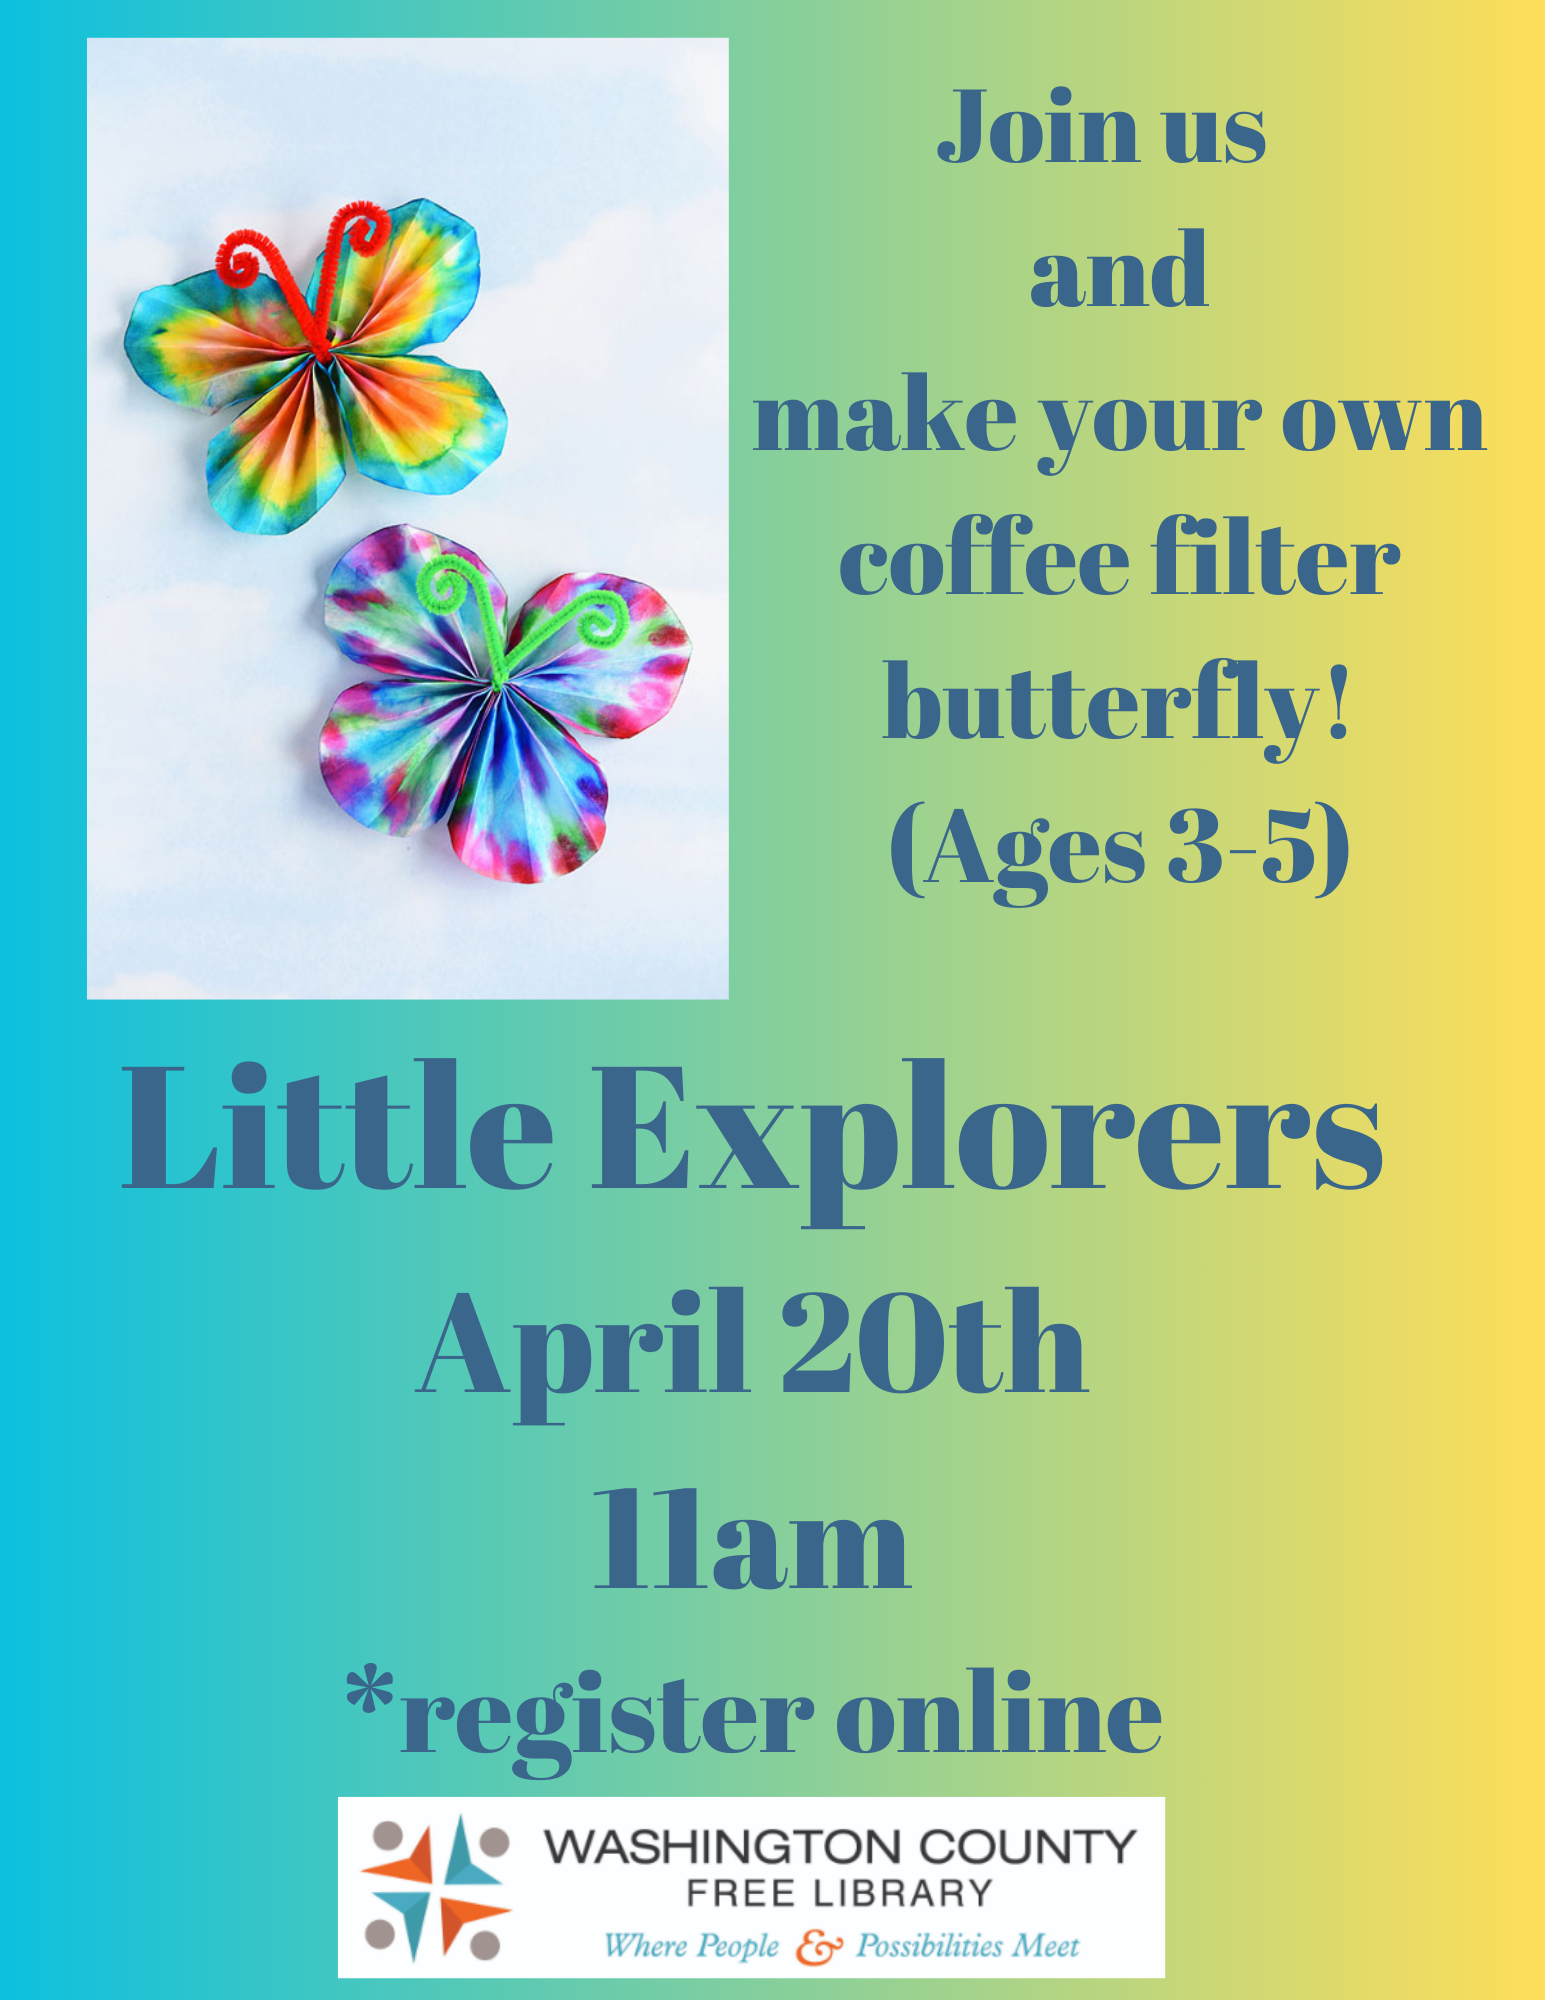 Little Explorers: Coffee Filter Butterflies